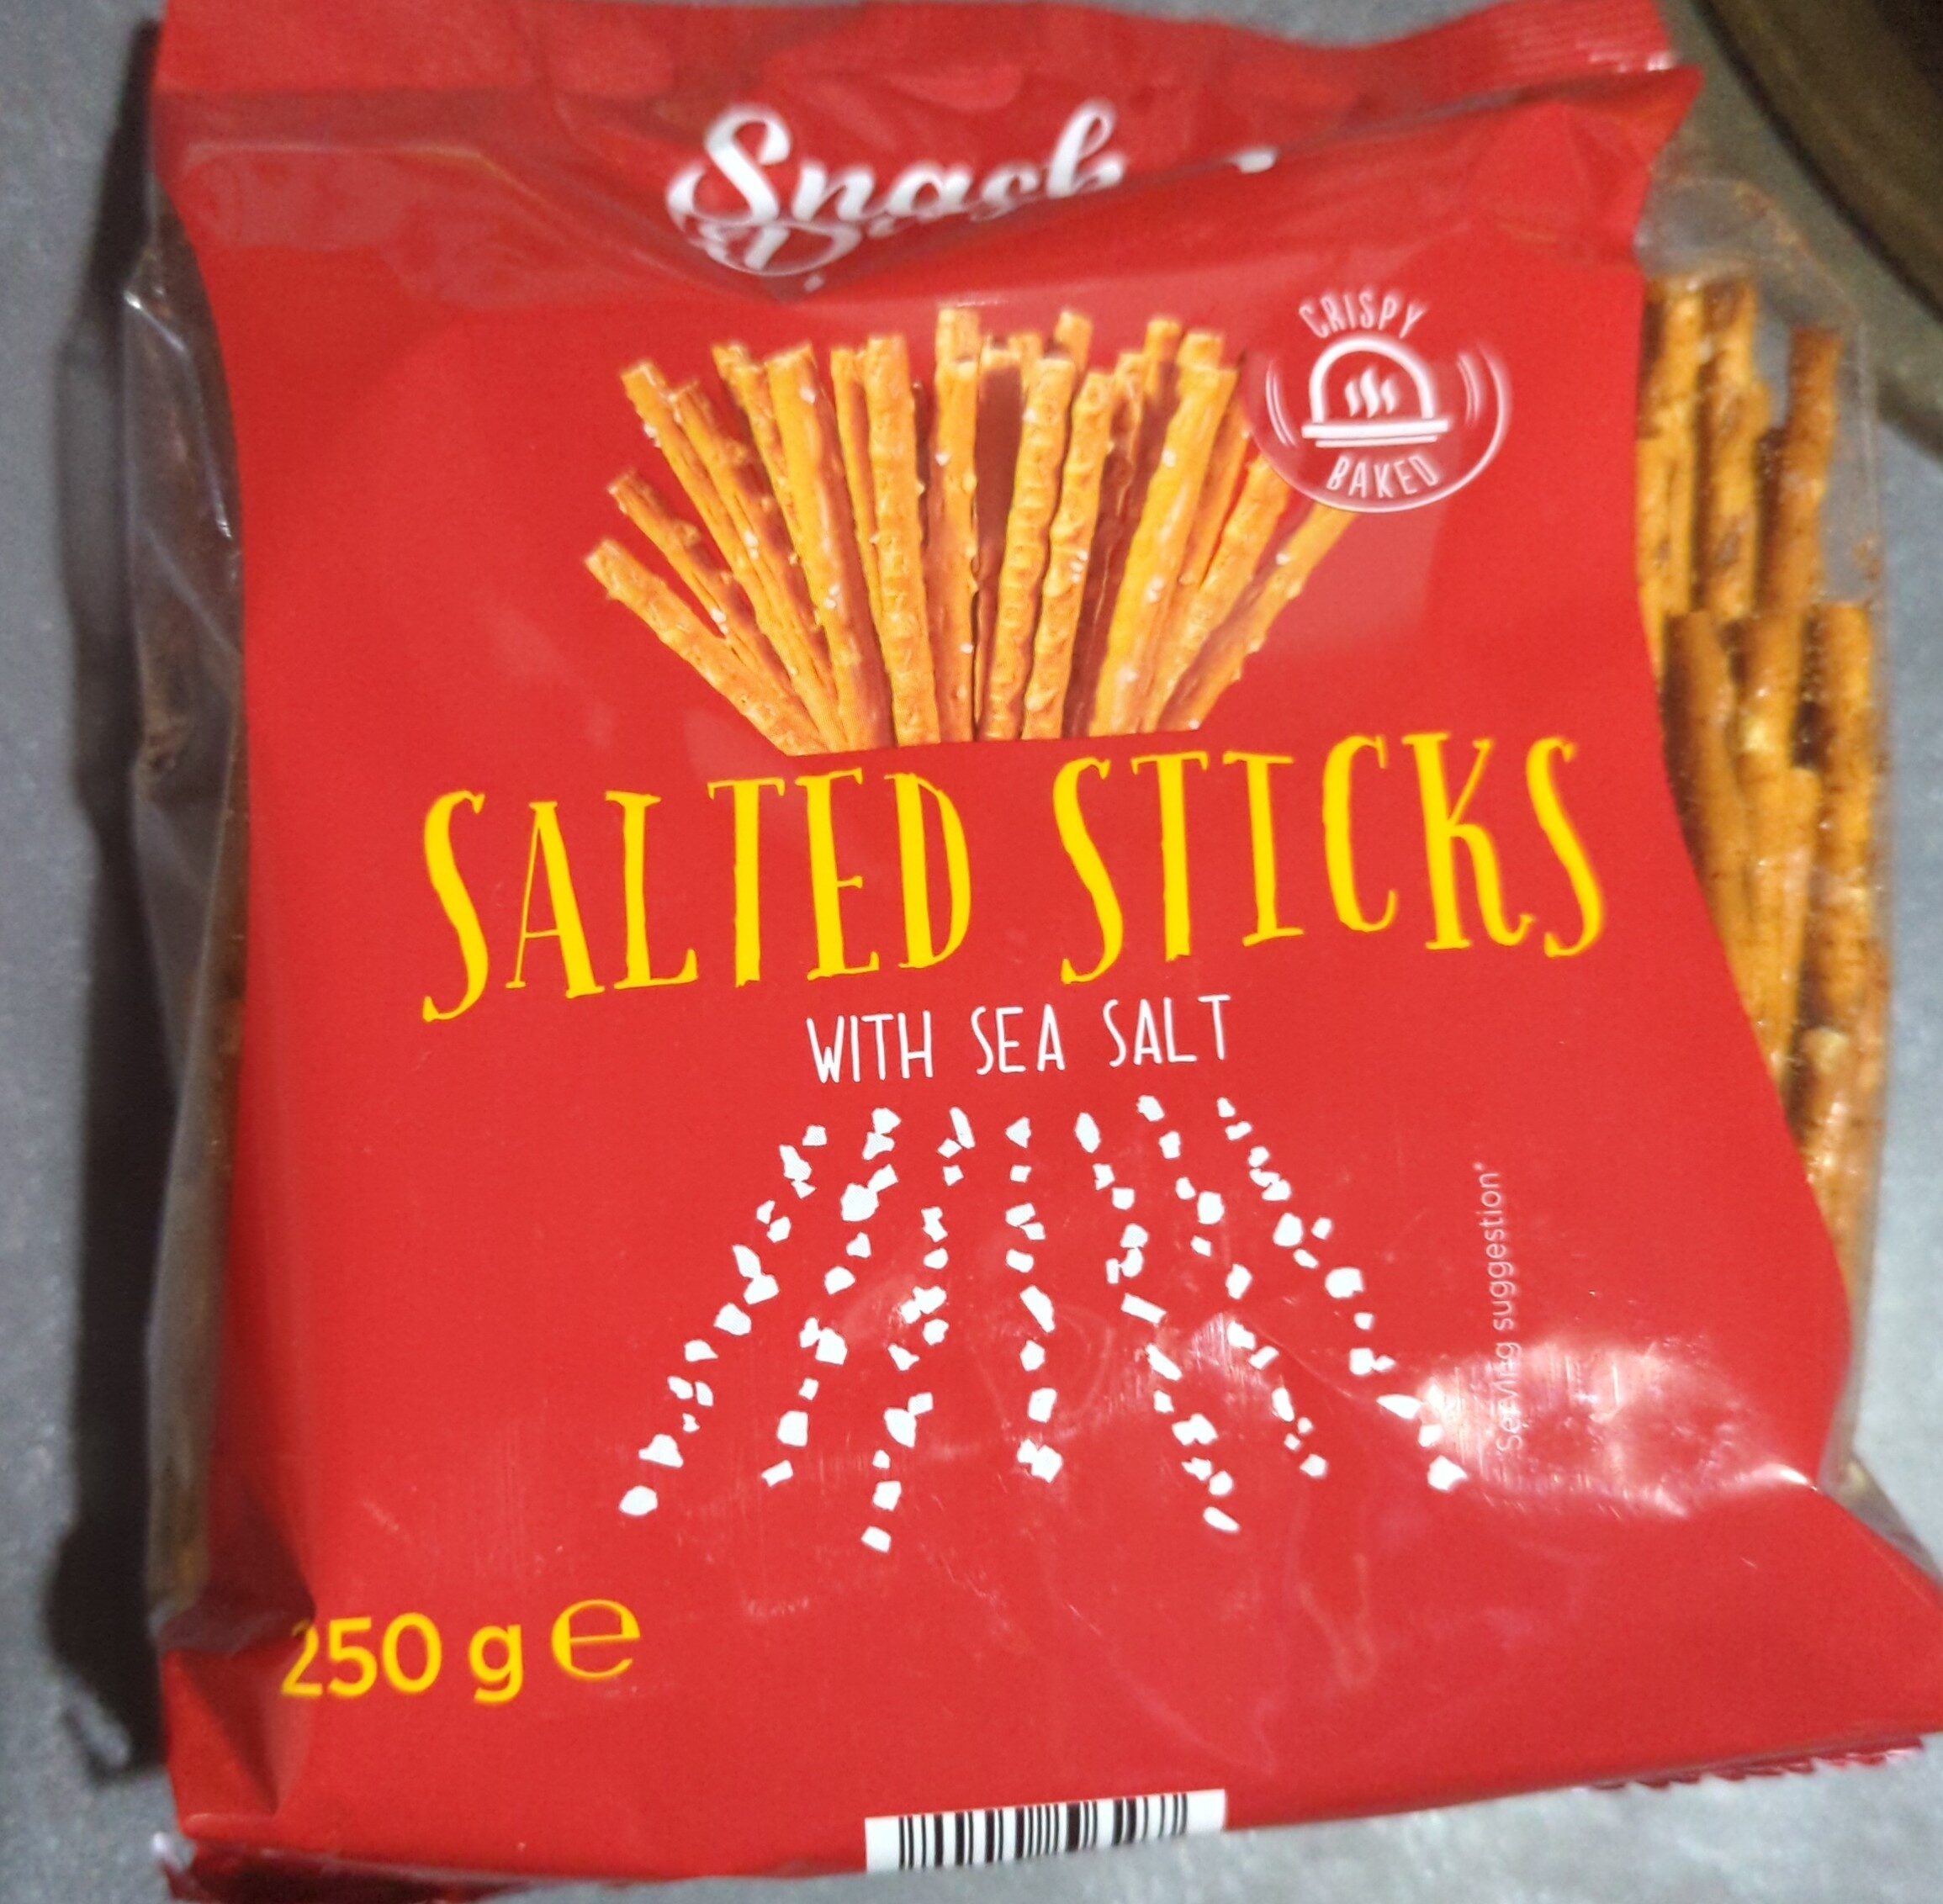 Salted sticks - Product - en